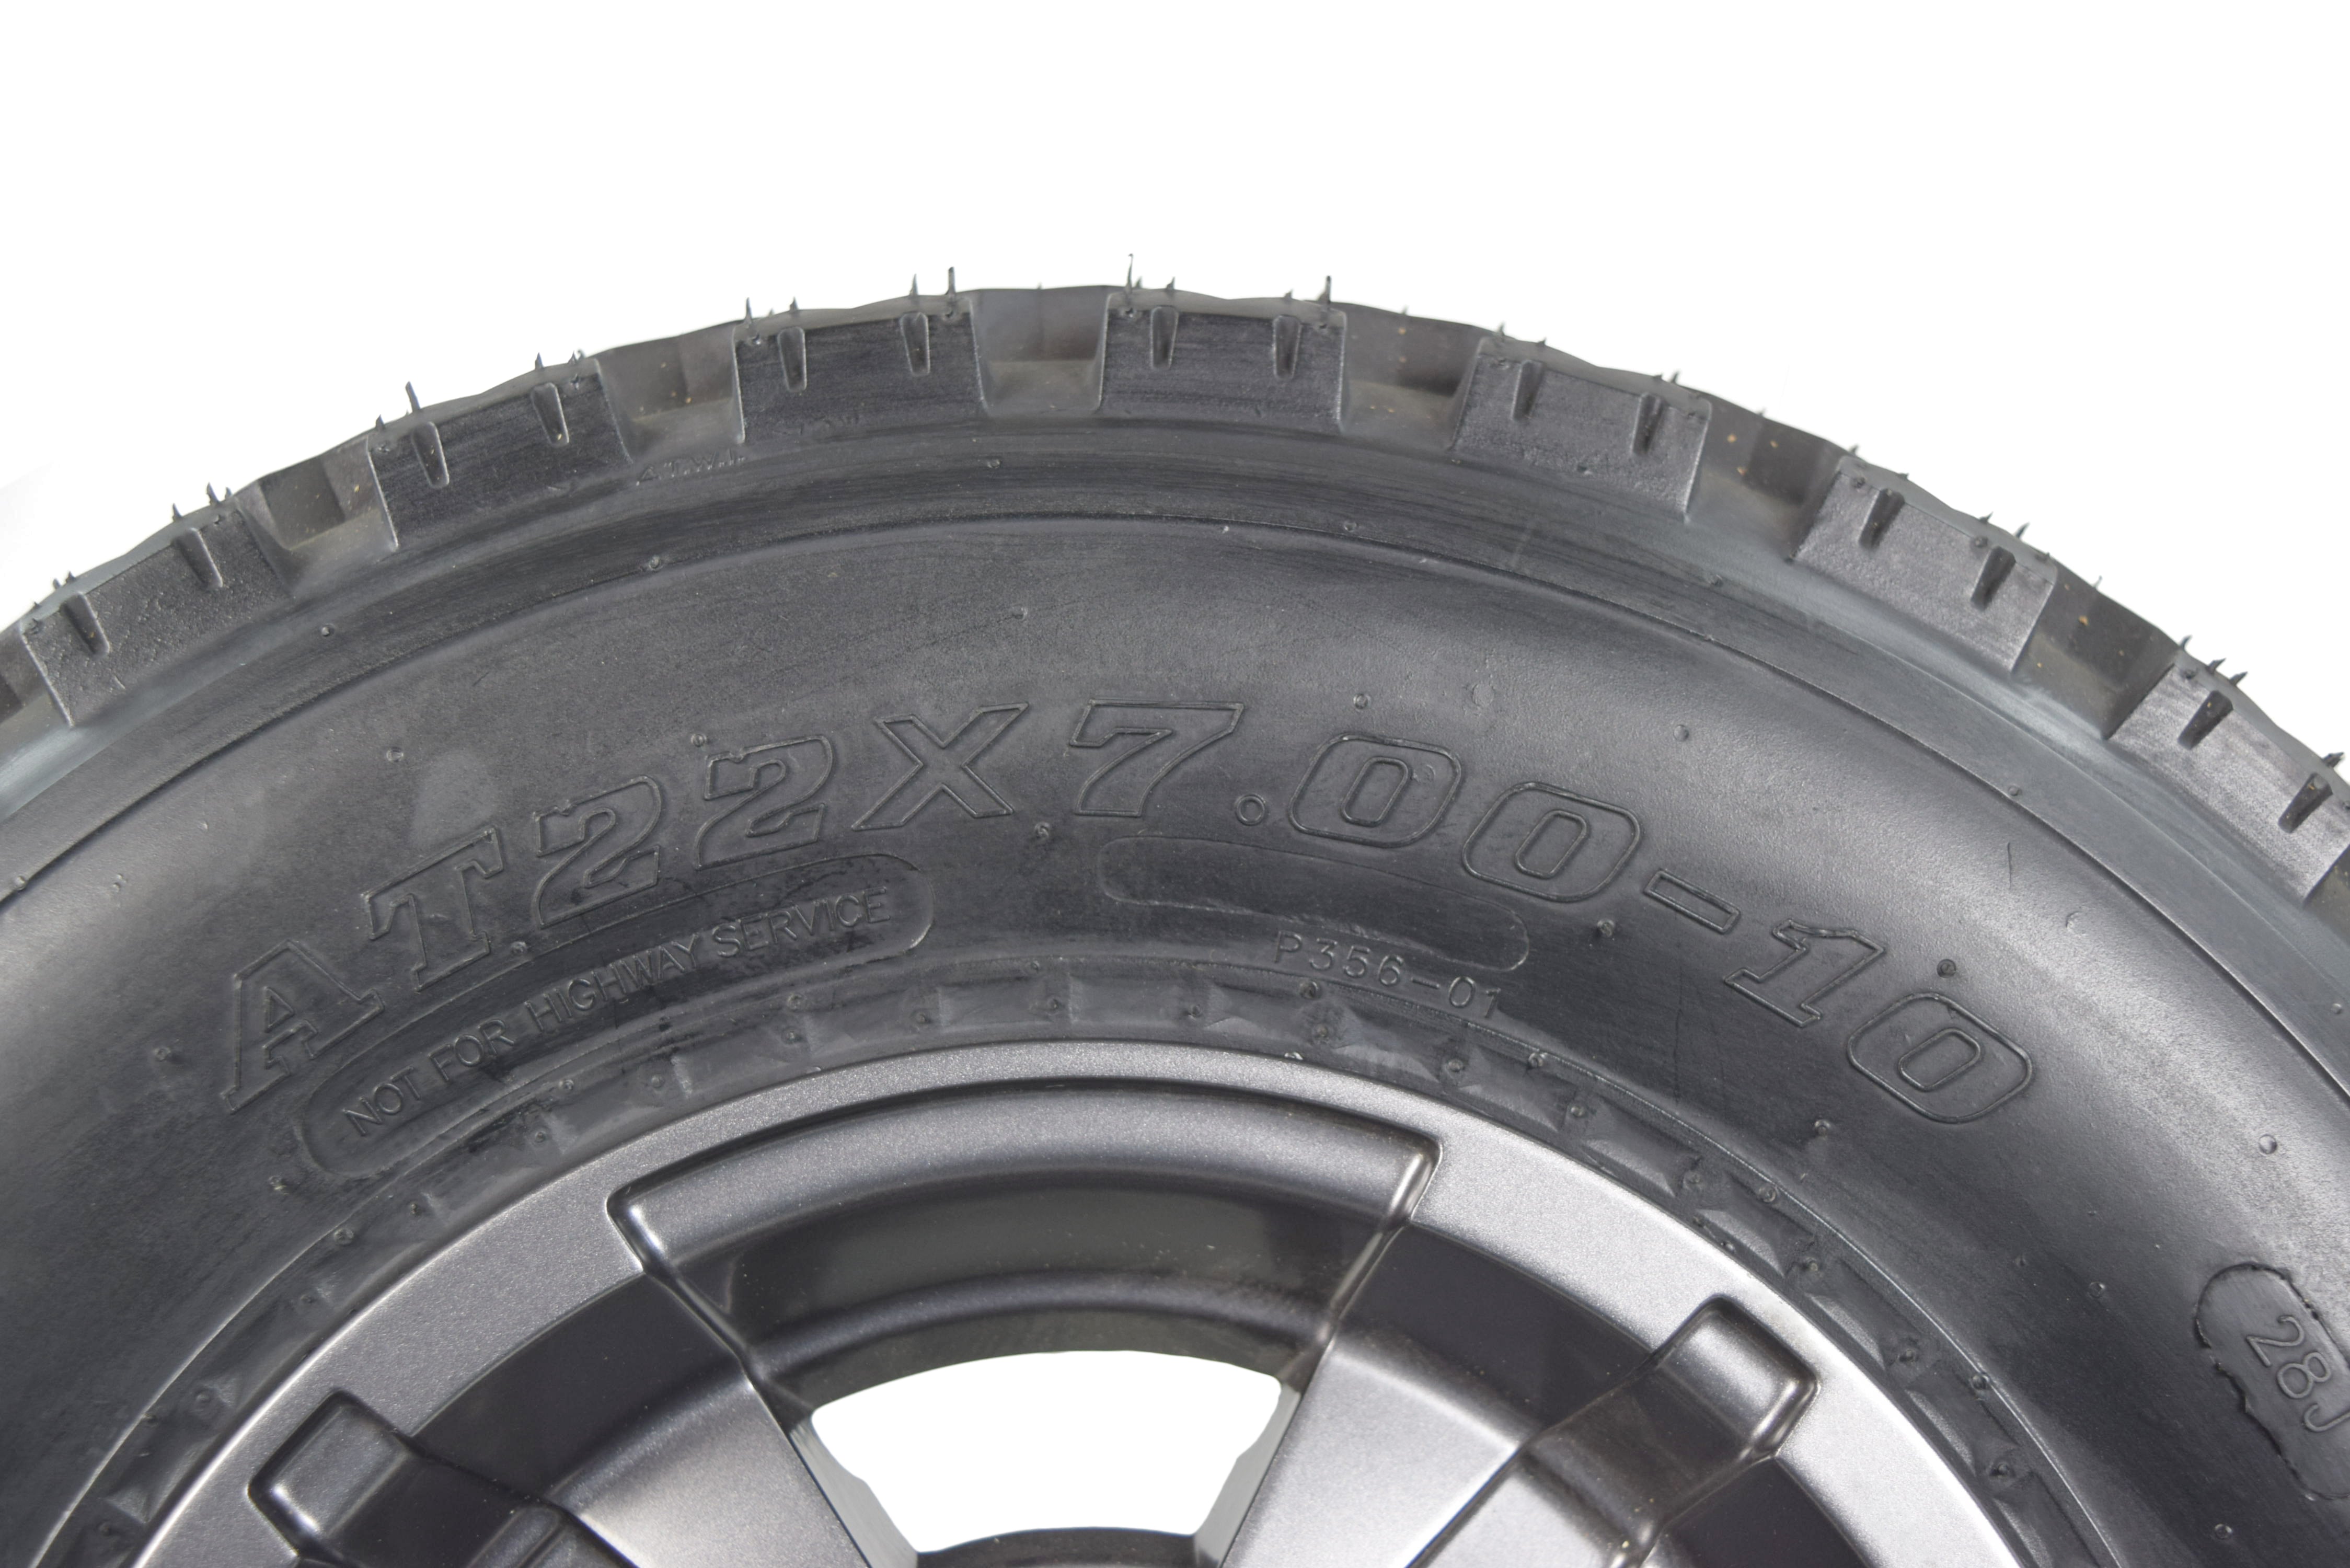 MASSFX 22x7-10 20x11-9 ATV Front Rear Tire & Wheel Kit 22x7x10 20x11x9 (4 Pack)